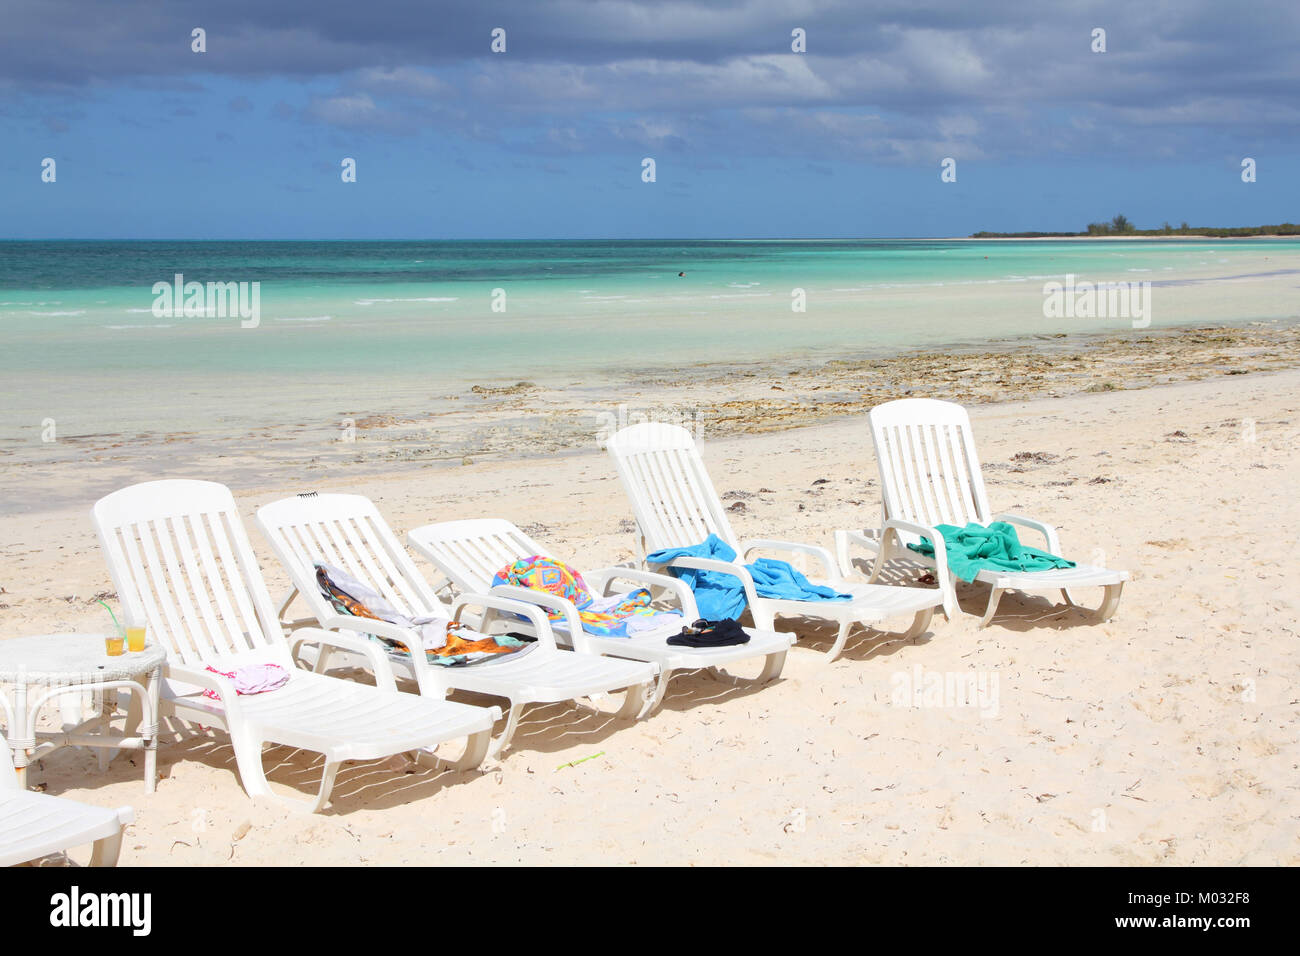 Cuba - famoso Cayo Coco beach resort all inclusive Foto Stock